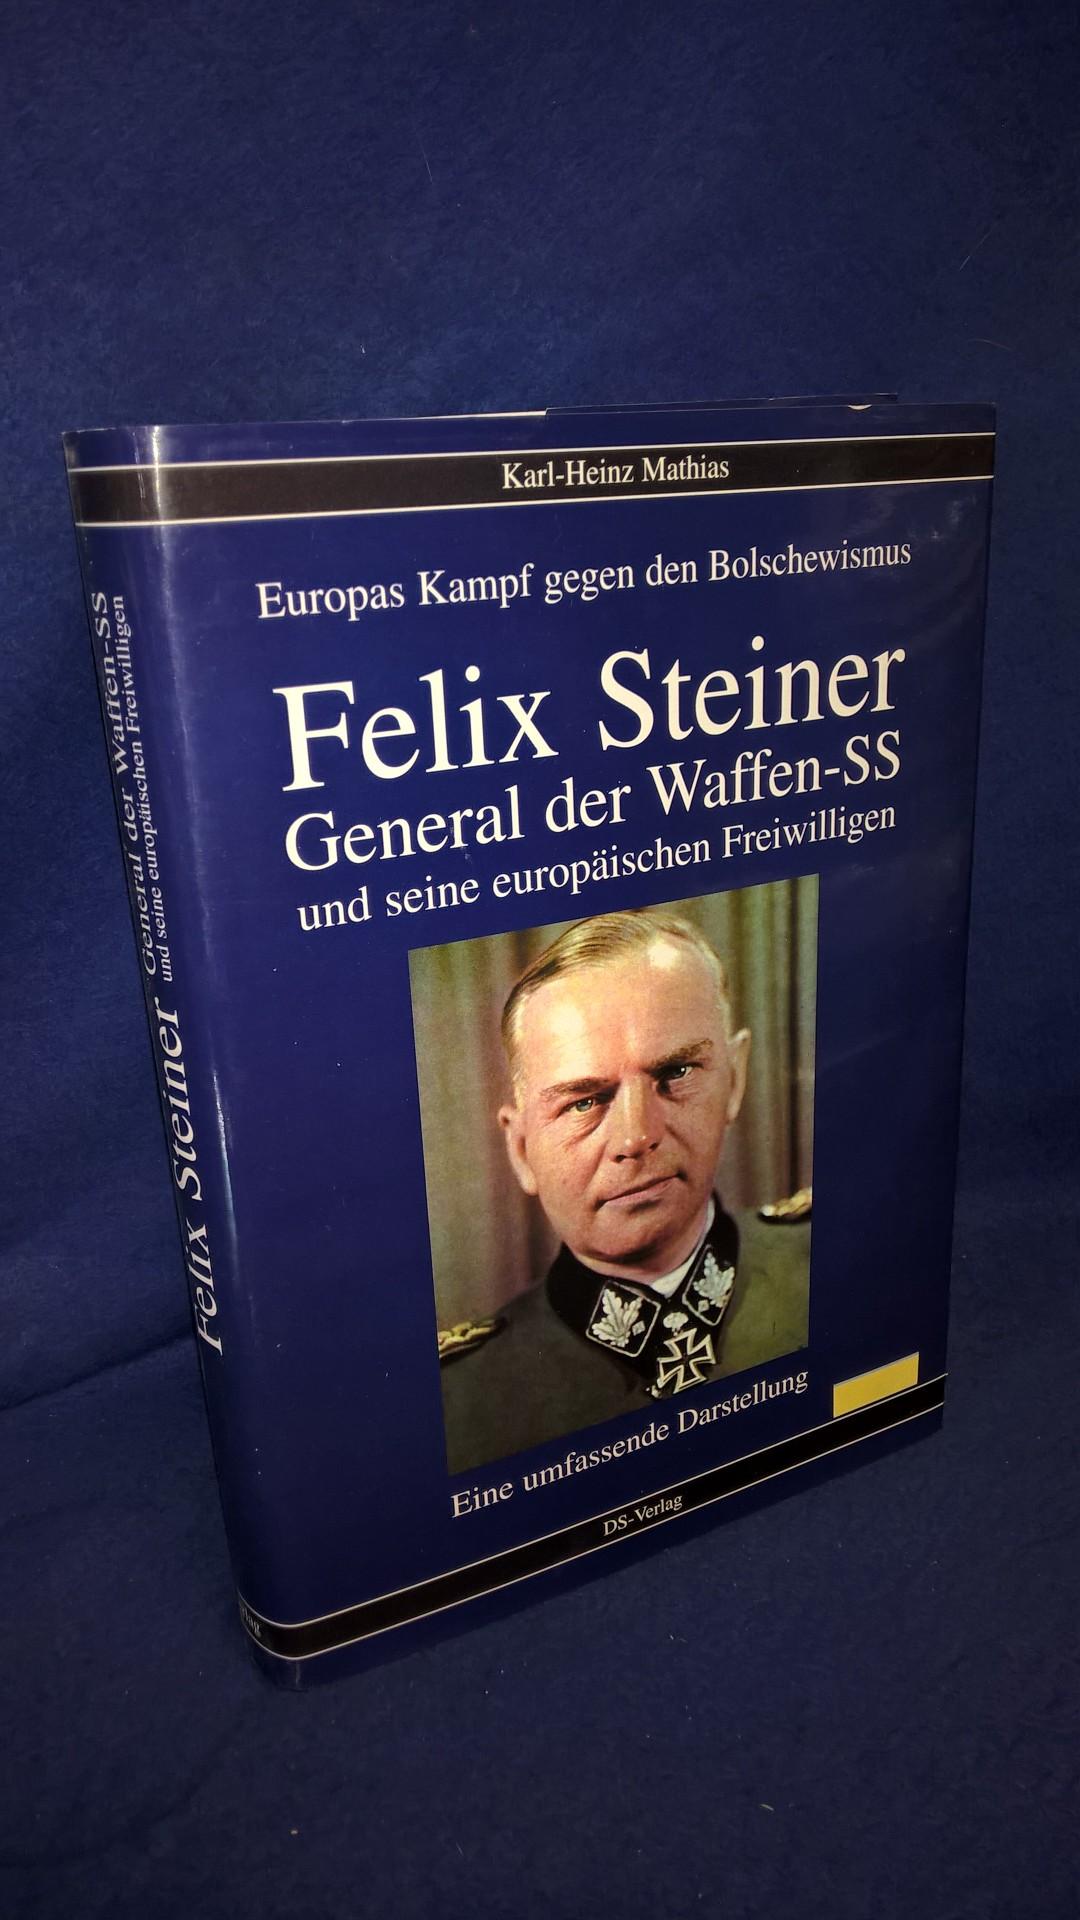 Felix Steiner, General der Waffen-SS und seine europäischen Freiwilligen